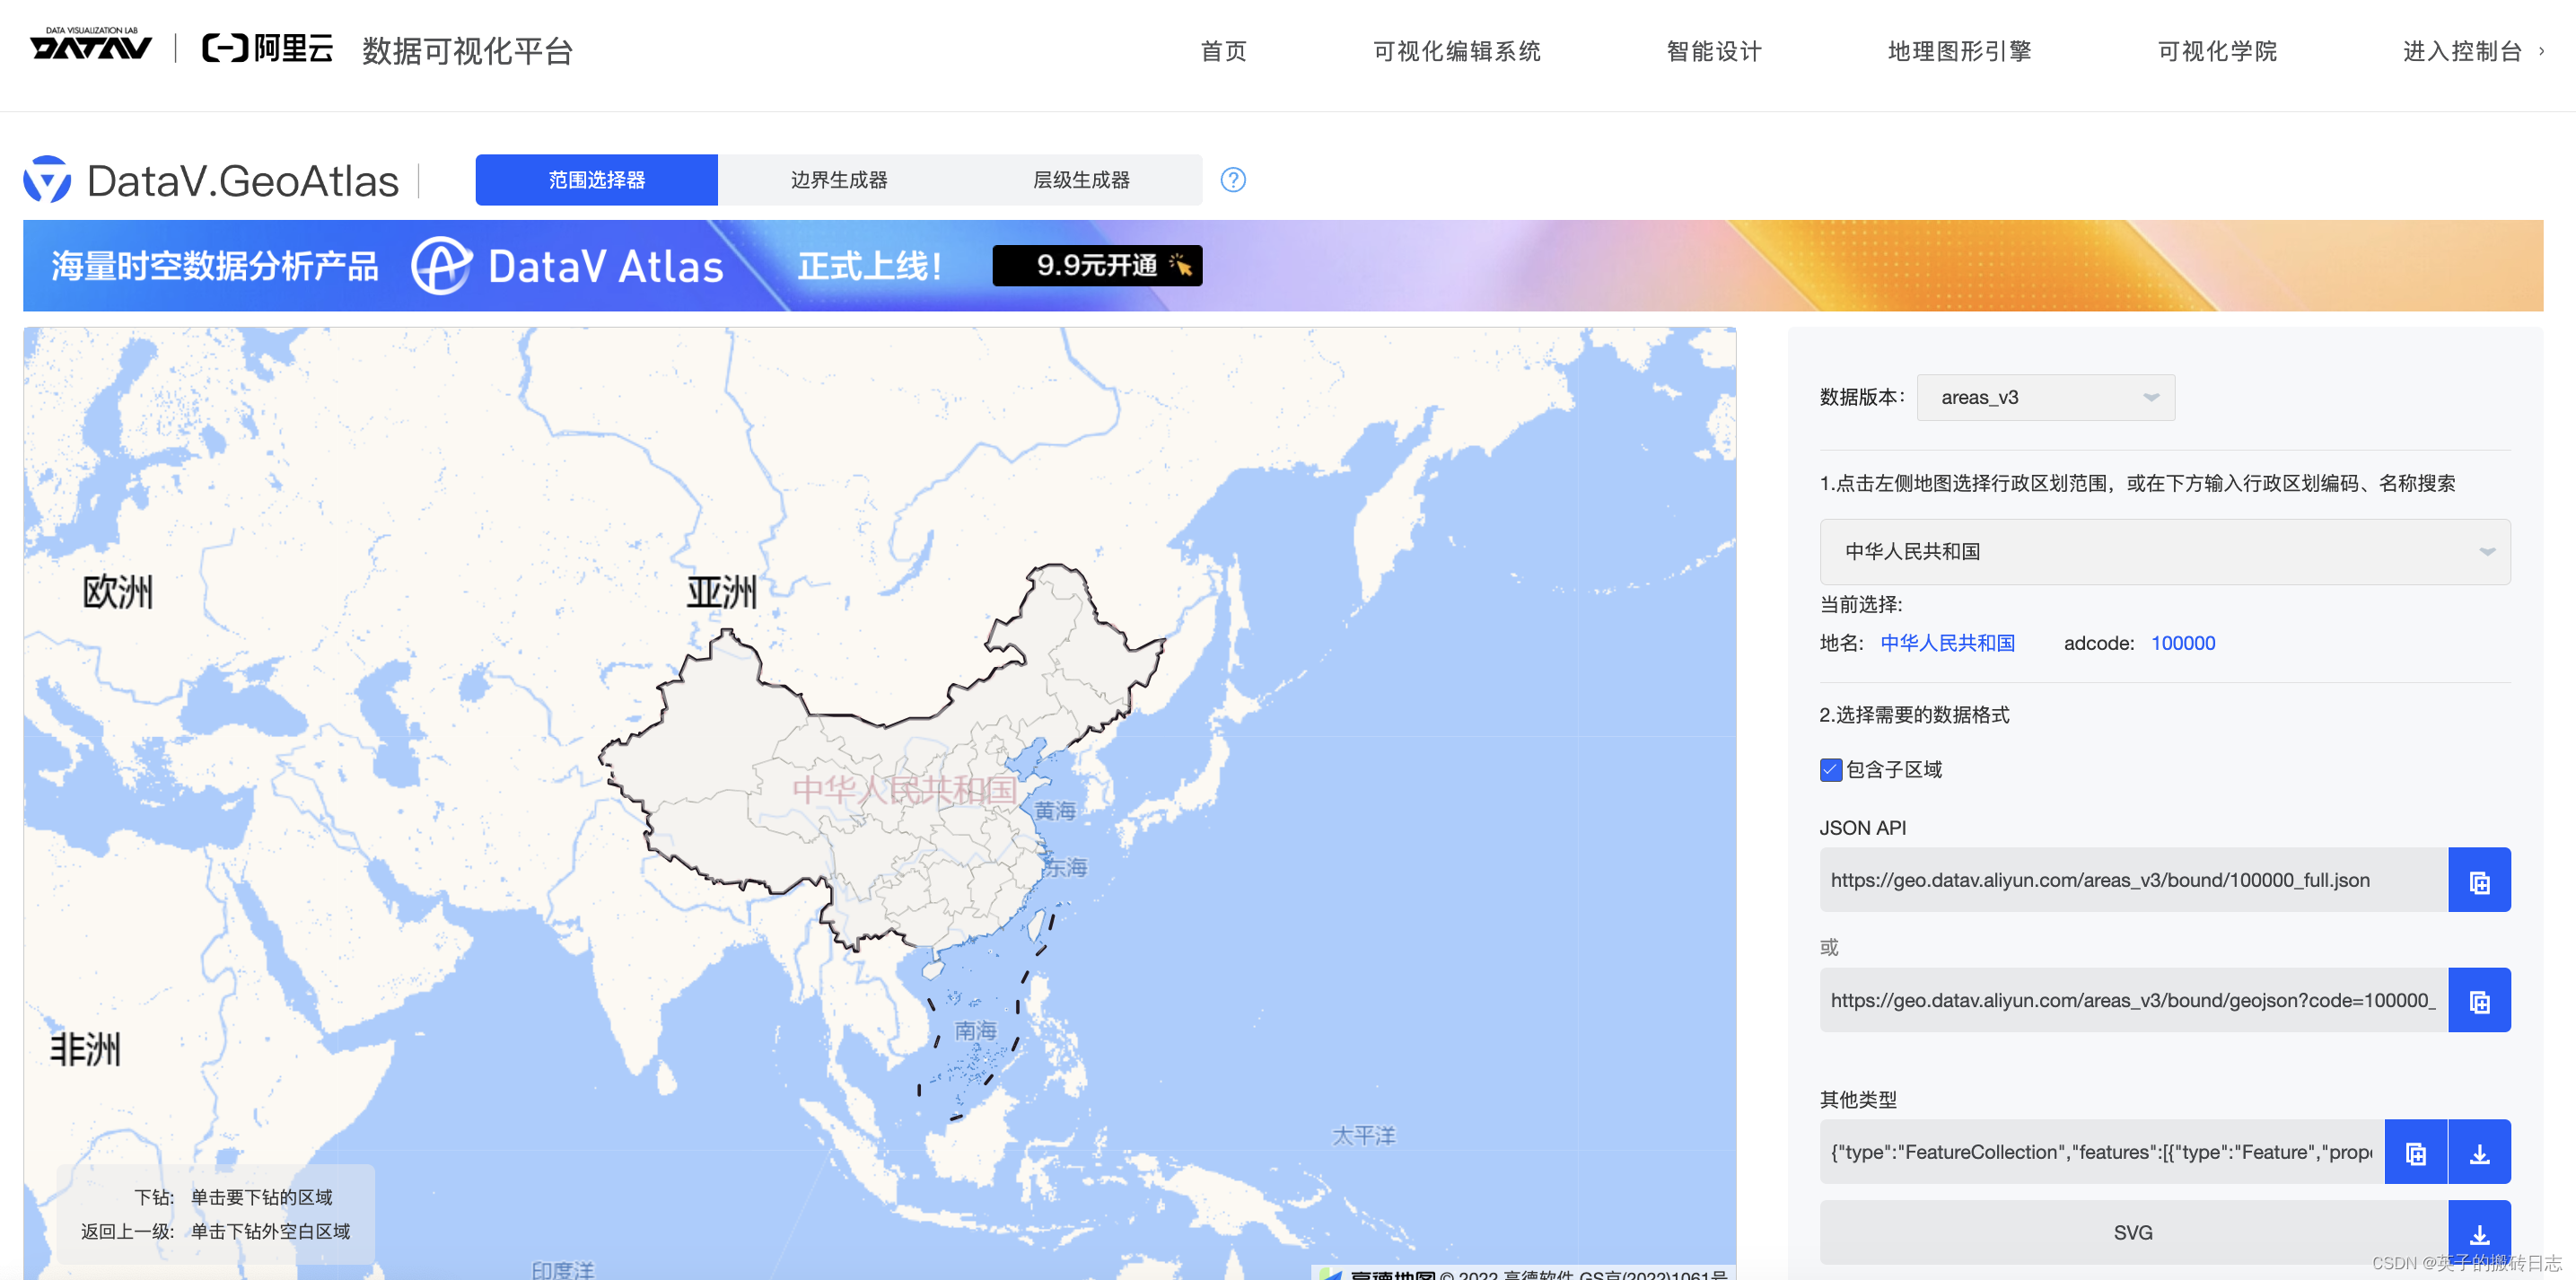  【vue3 + Echarts 】中国地图省市区下钻，并返回上级